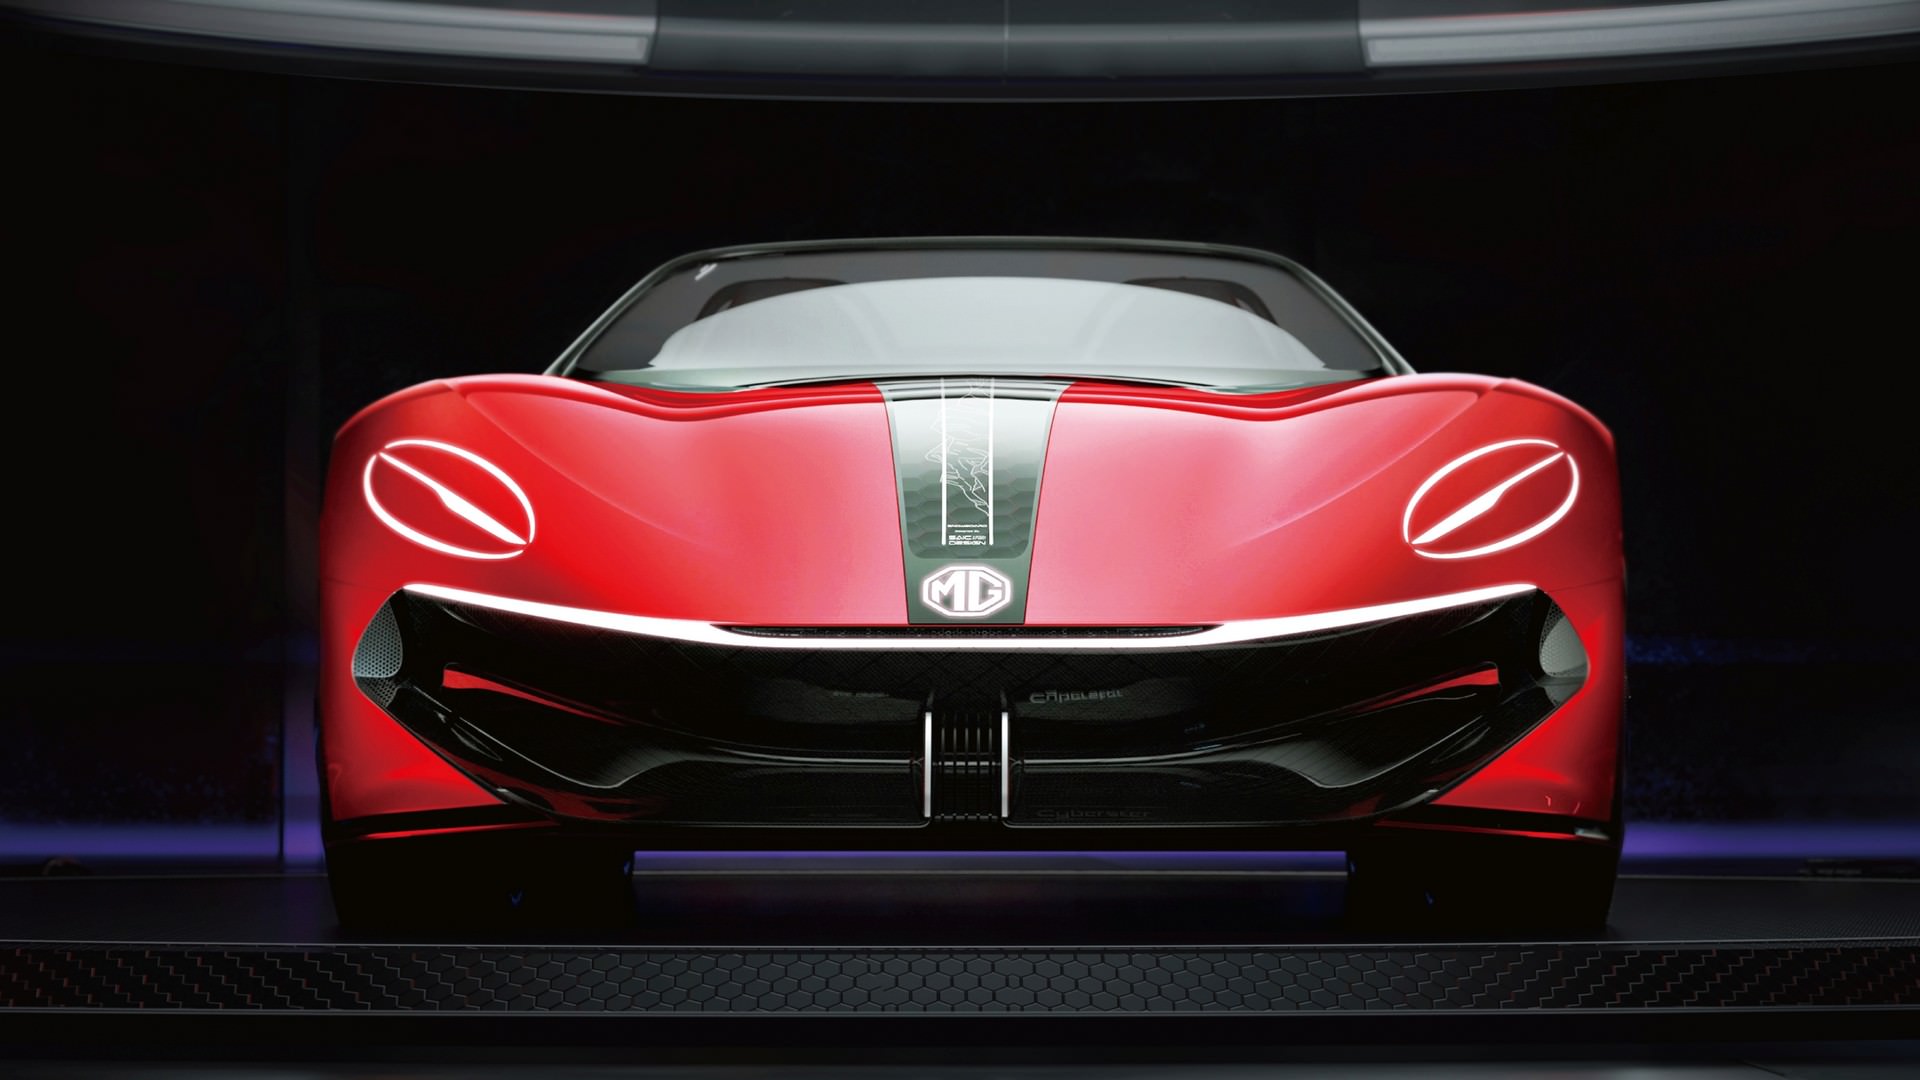 نمای جلو خودروی مفهومی  و برقی ام جی سایبرستر / MG Cyberster Concept قرمز رنگ